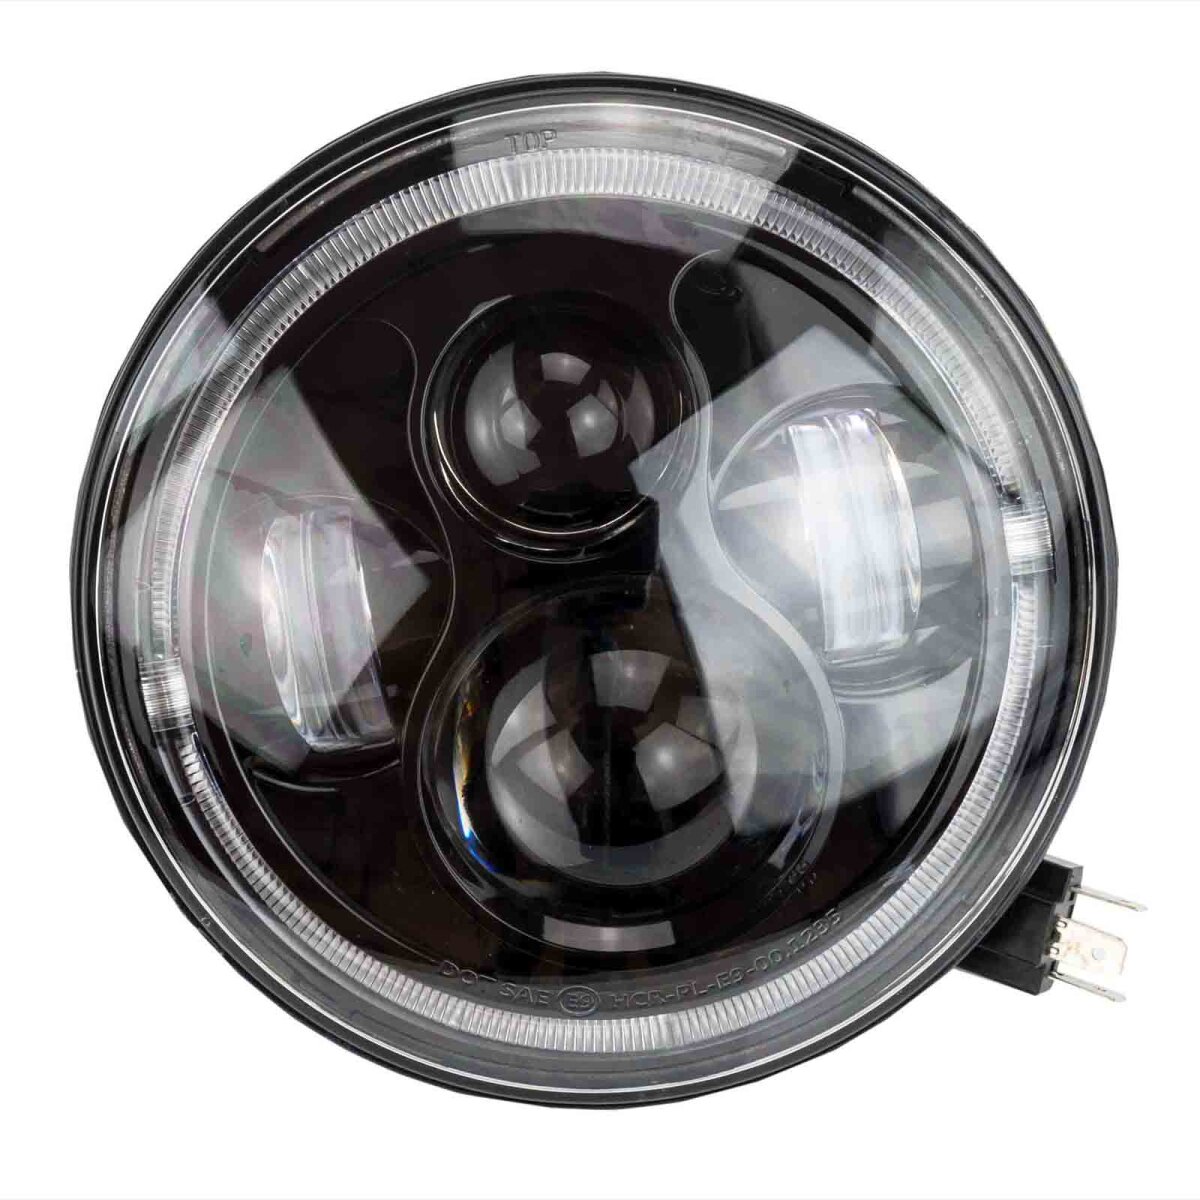 Full LED-Scheinwerferoptik für Rundscheinwerfer beim Motorrad